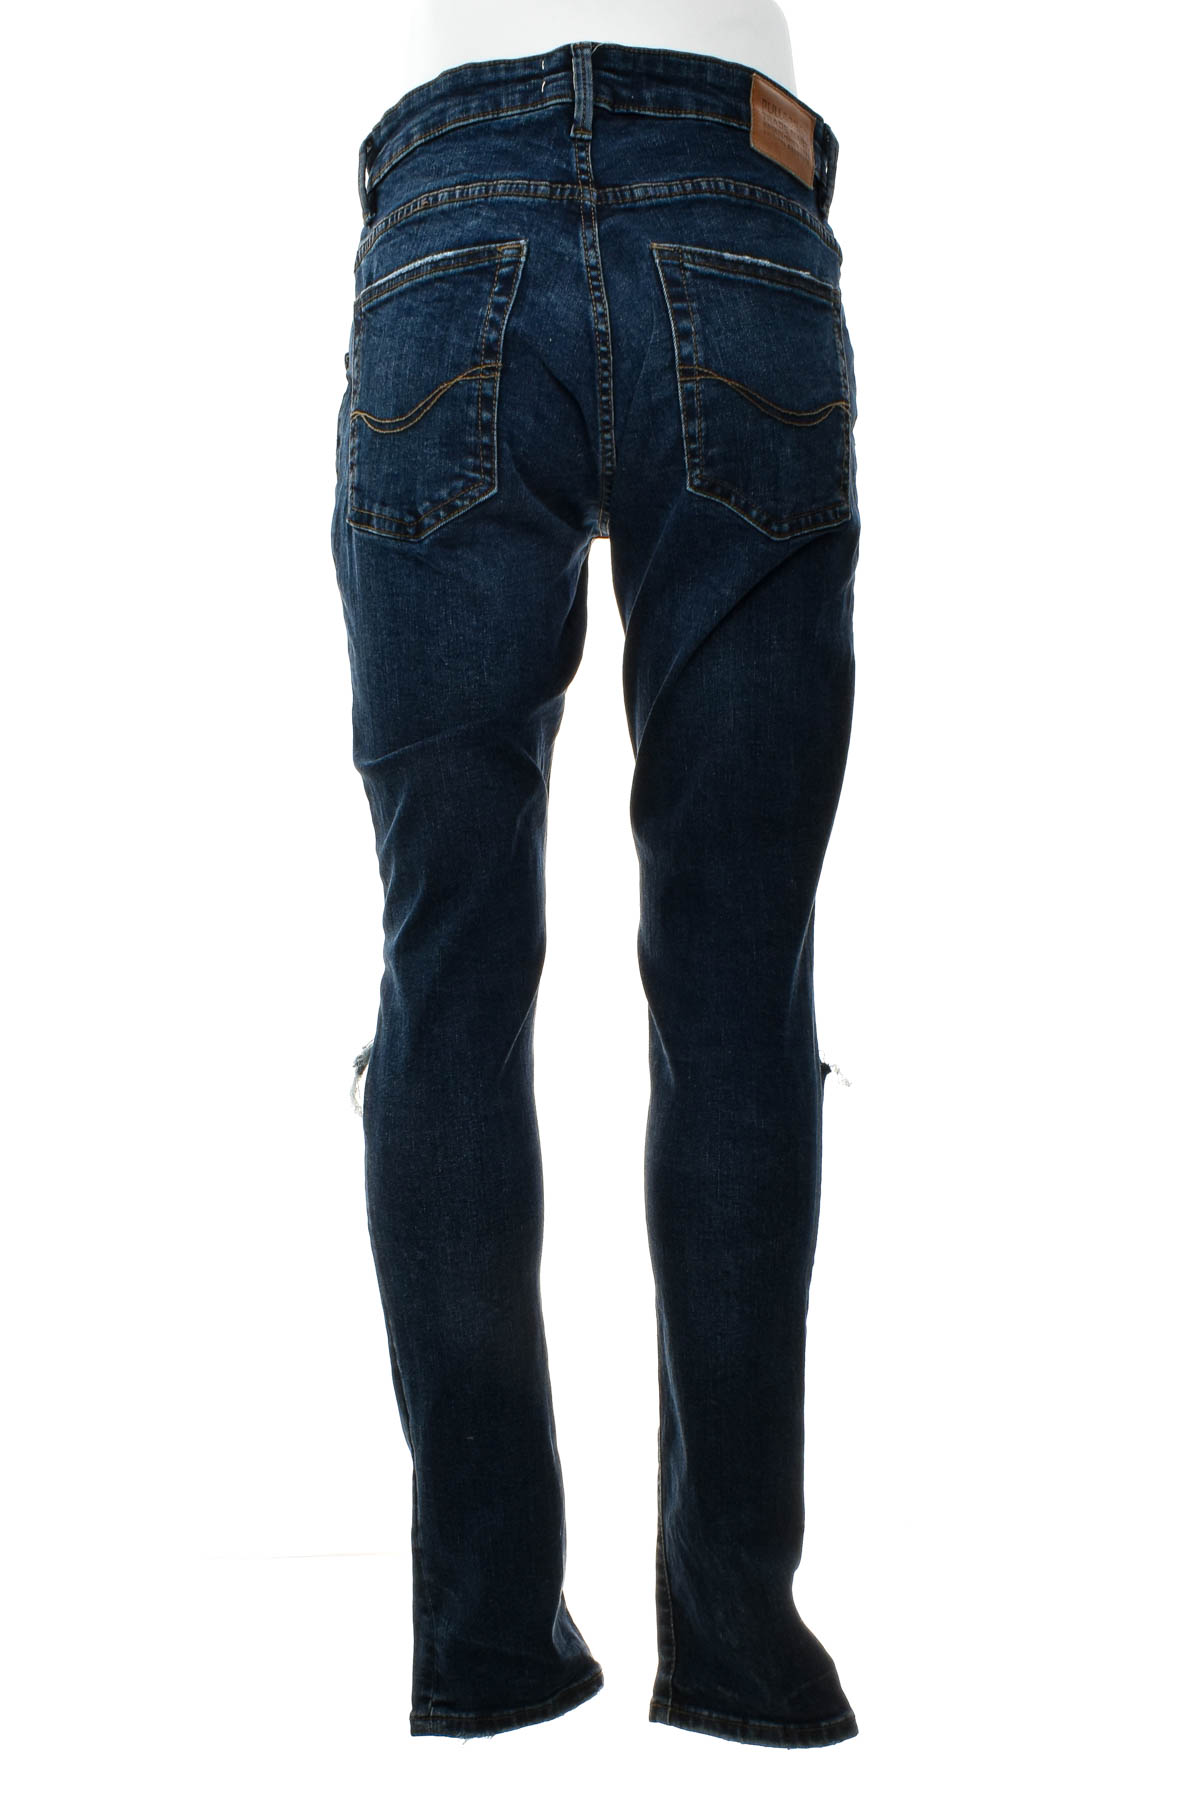 Jeans pentru bărbăți - Pull & Bear - 1